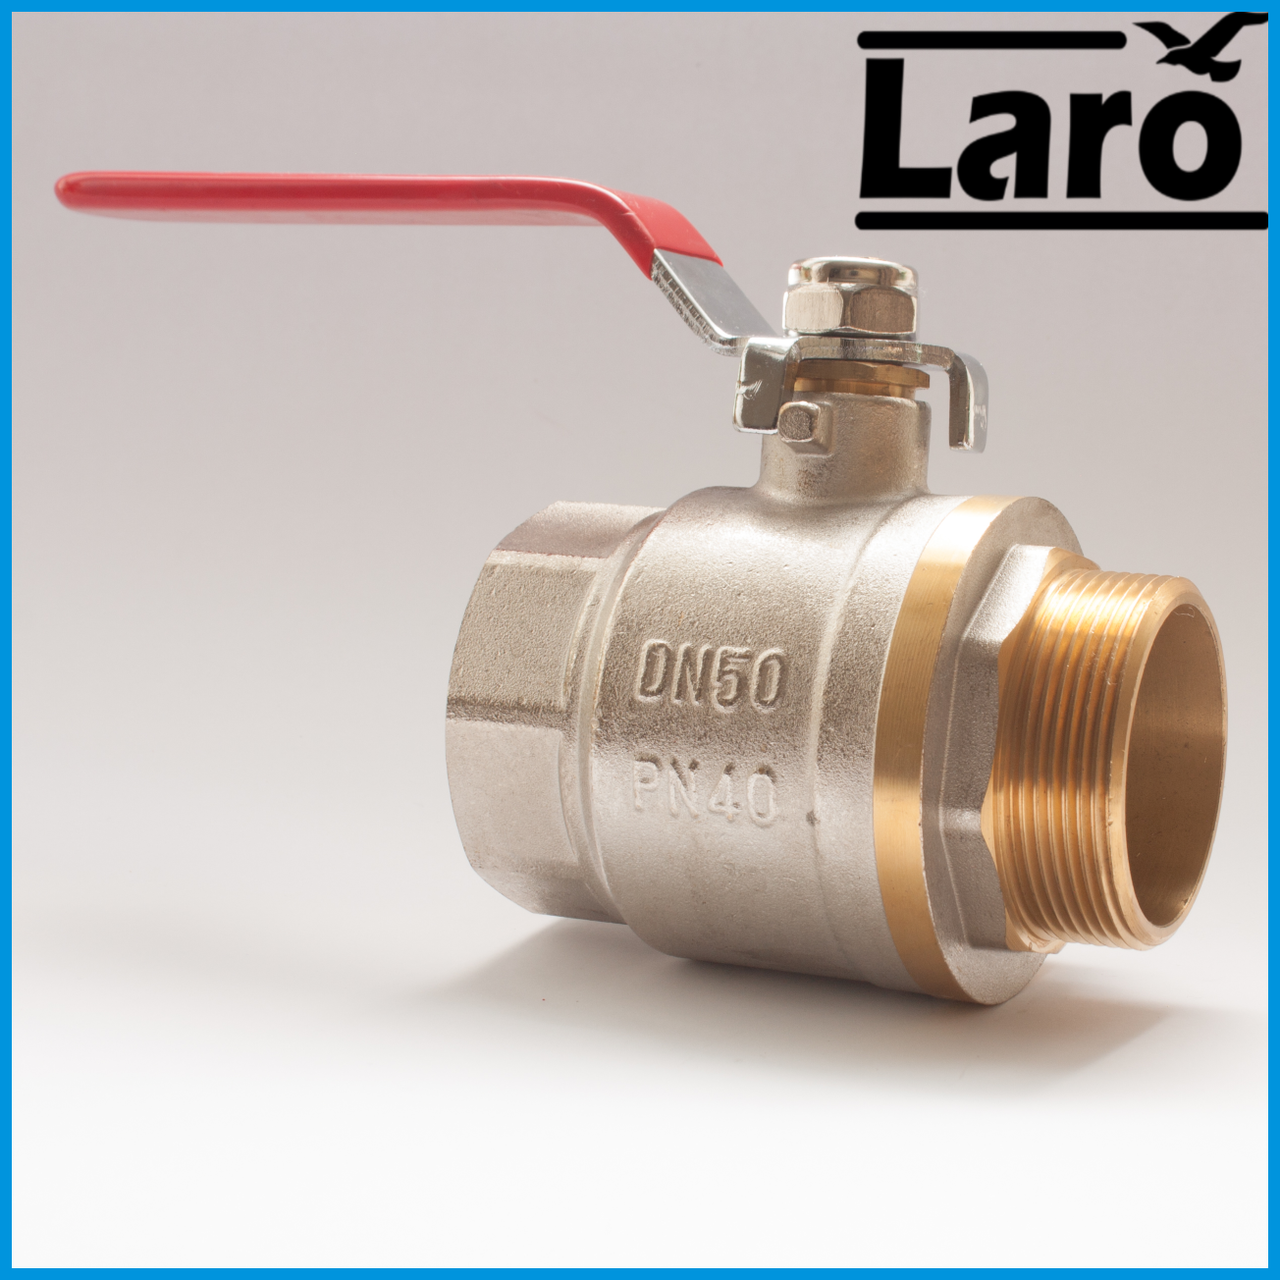  шаровый латунный Ду50 В/Н Laro pro art 117 (для воды): продажа .